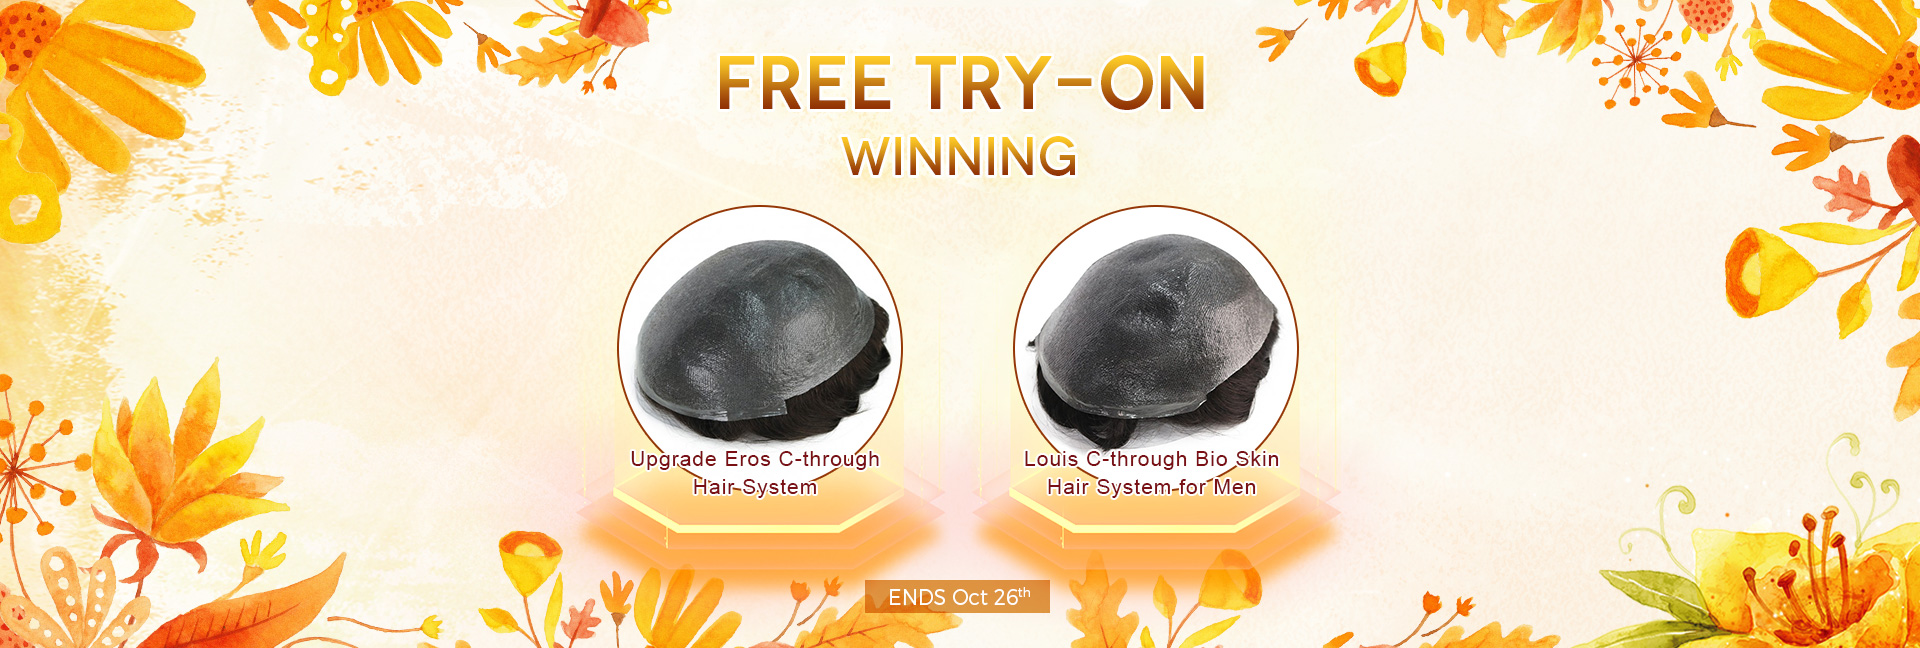 Free Try-On Winning Upgrade Eros C-through Hair System&Louis C-through Bio Skin Hair System for Men